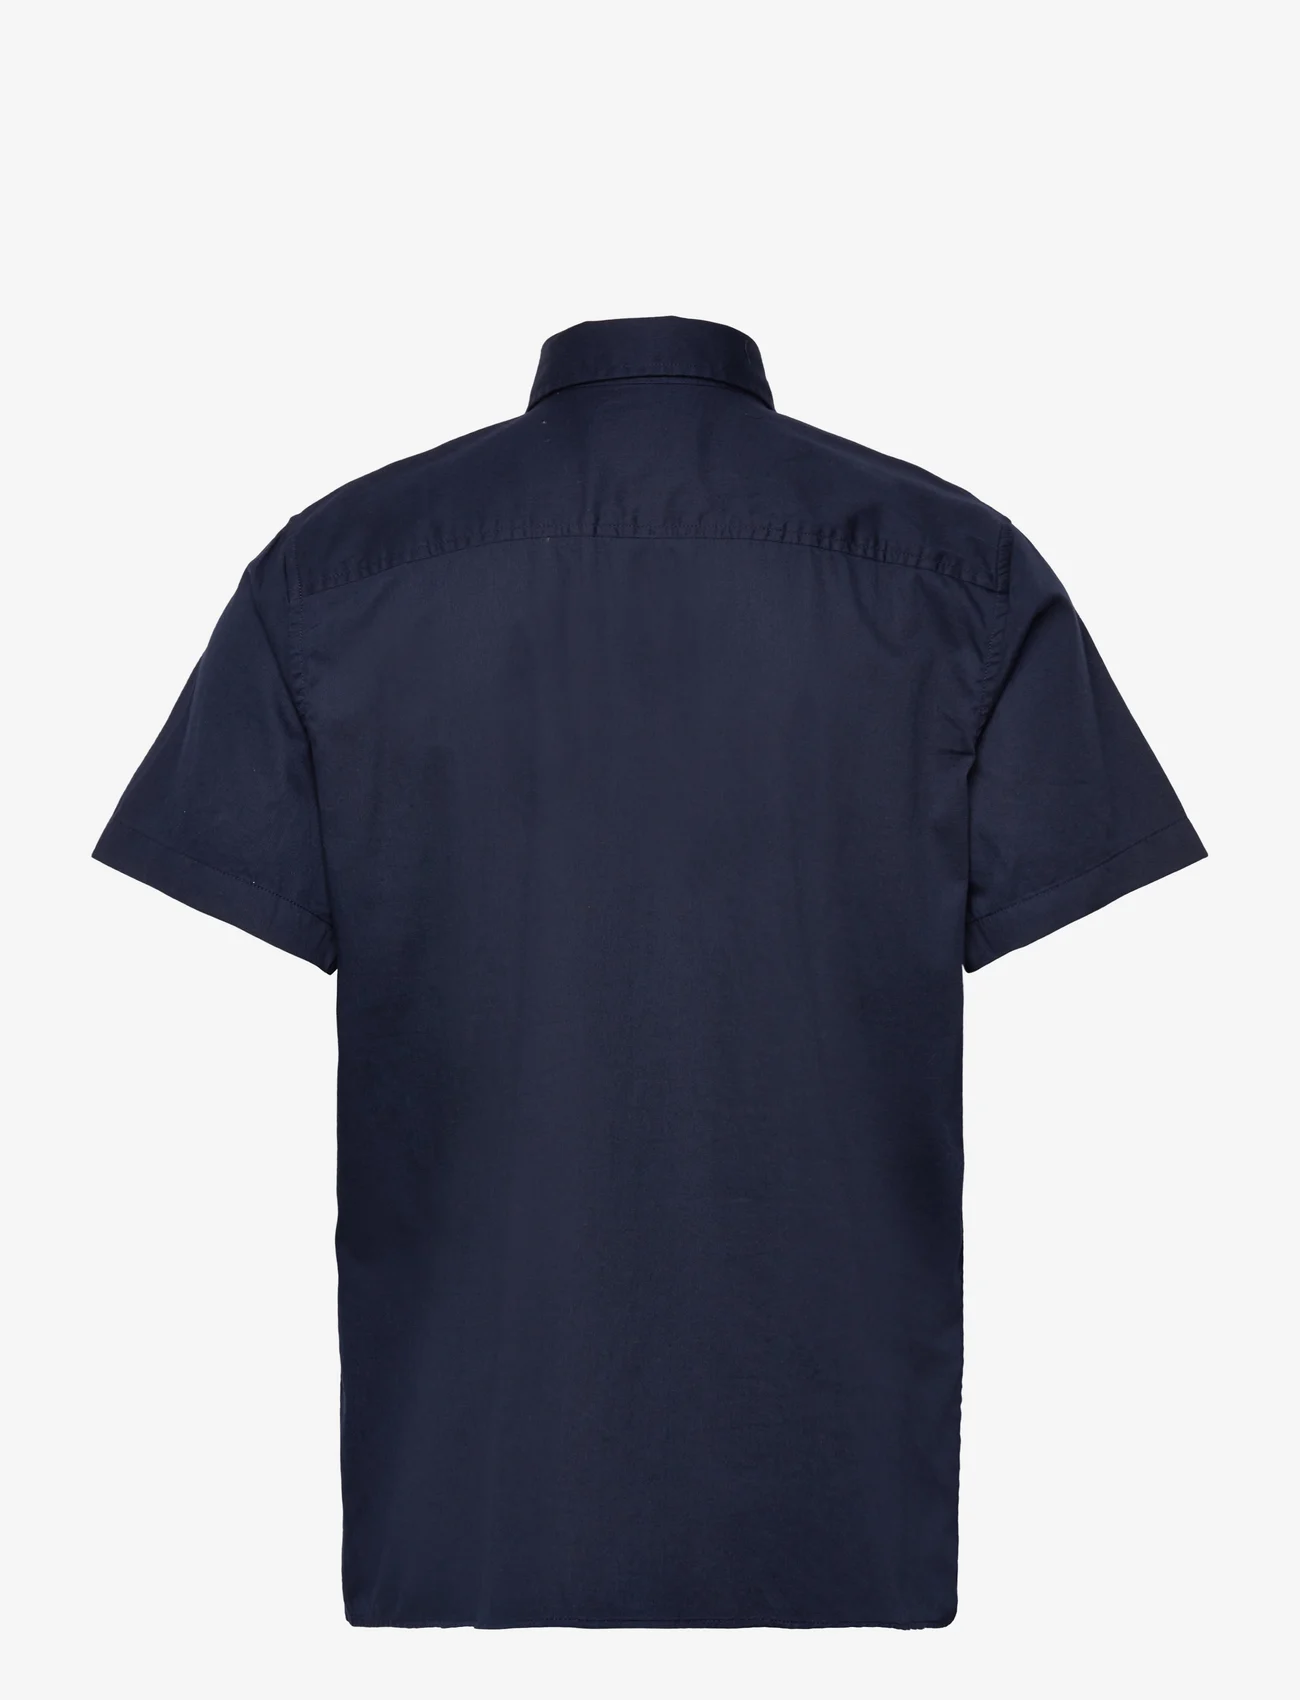 Tom Tailor - bedford shirt - die niedrigsten preise - sky captain blue - 1